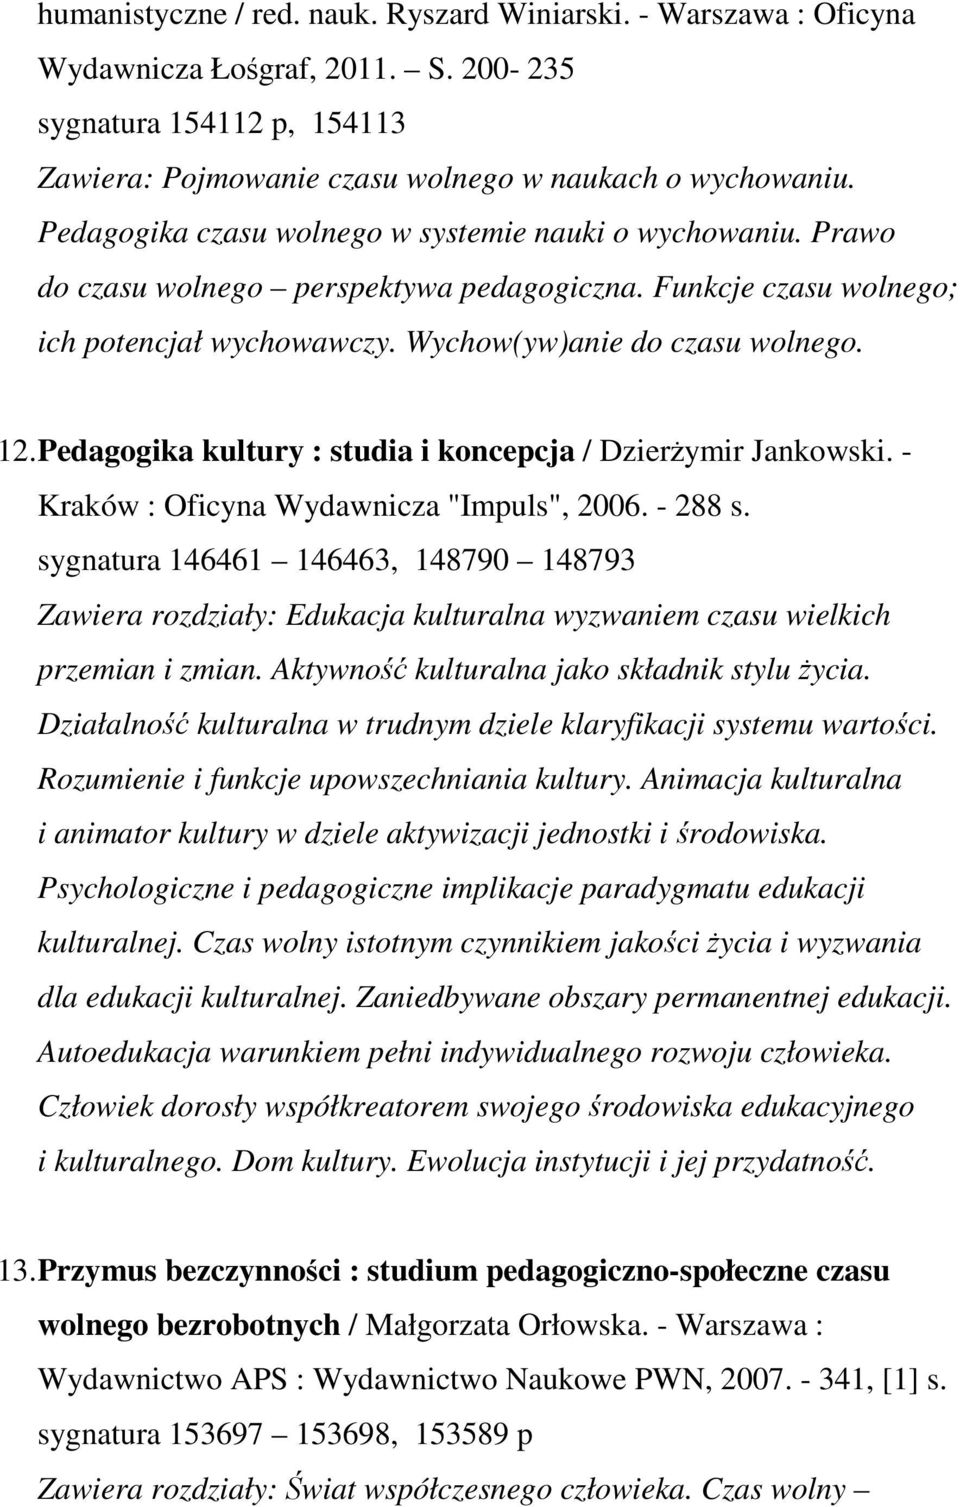 Pedagogika kultury : studia i koncepcja / Dzierżymir Jankowski. - Kraków : Oficyna Wydawnicza "Impuls", 2006. - 288 s.